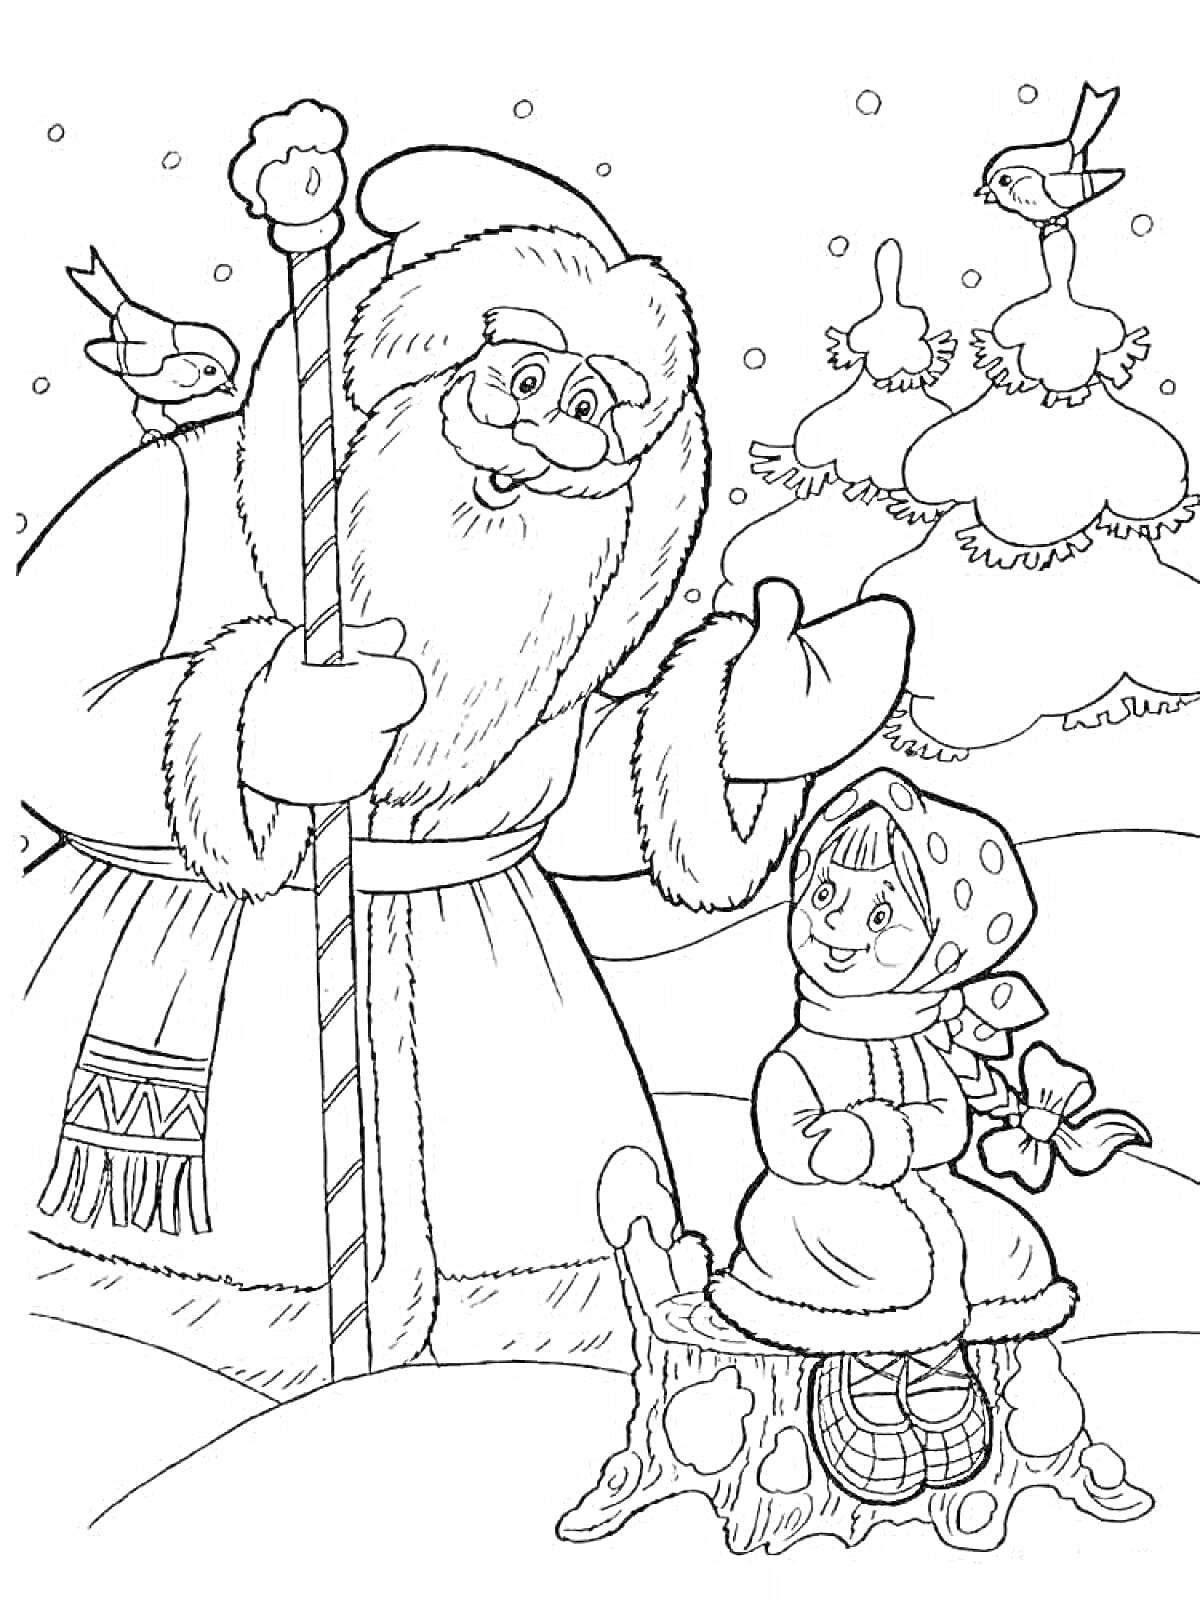 Раскраска Дед Мороз с посохом и девочка в платке на пеньке, зимняя сцена с елью и птицами